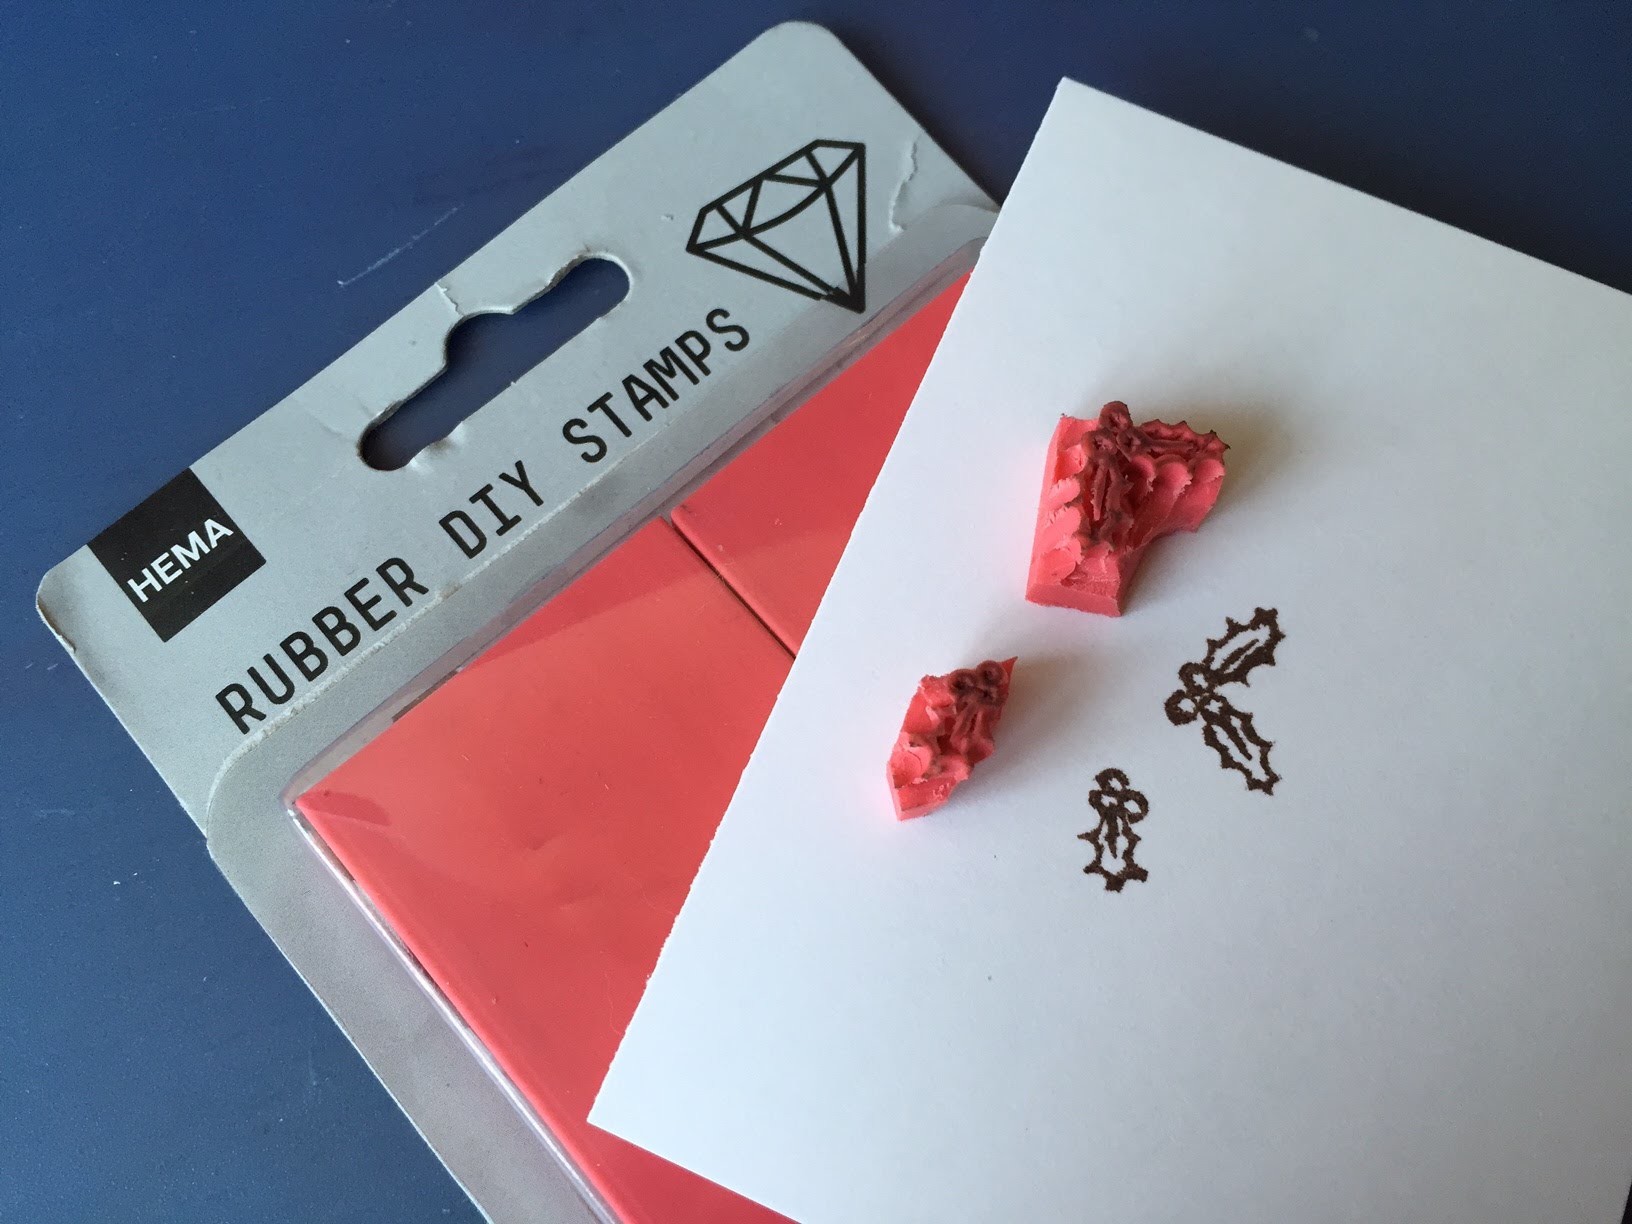 Zelf stempels maken: met Rubber DIY Stamps van Hema